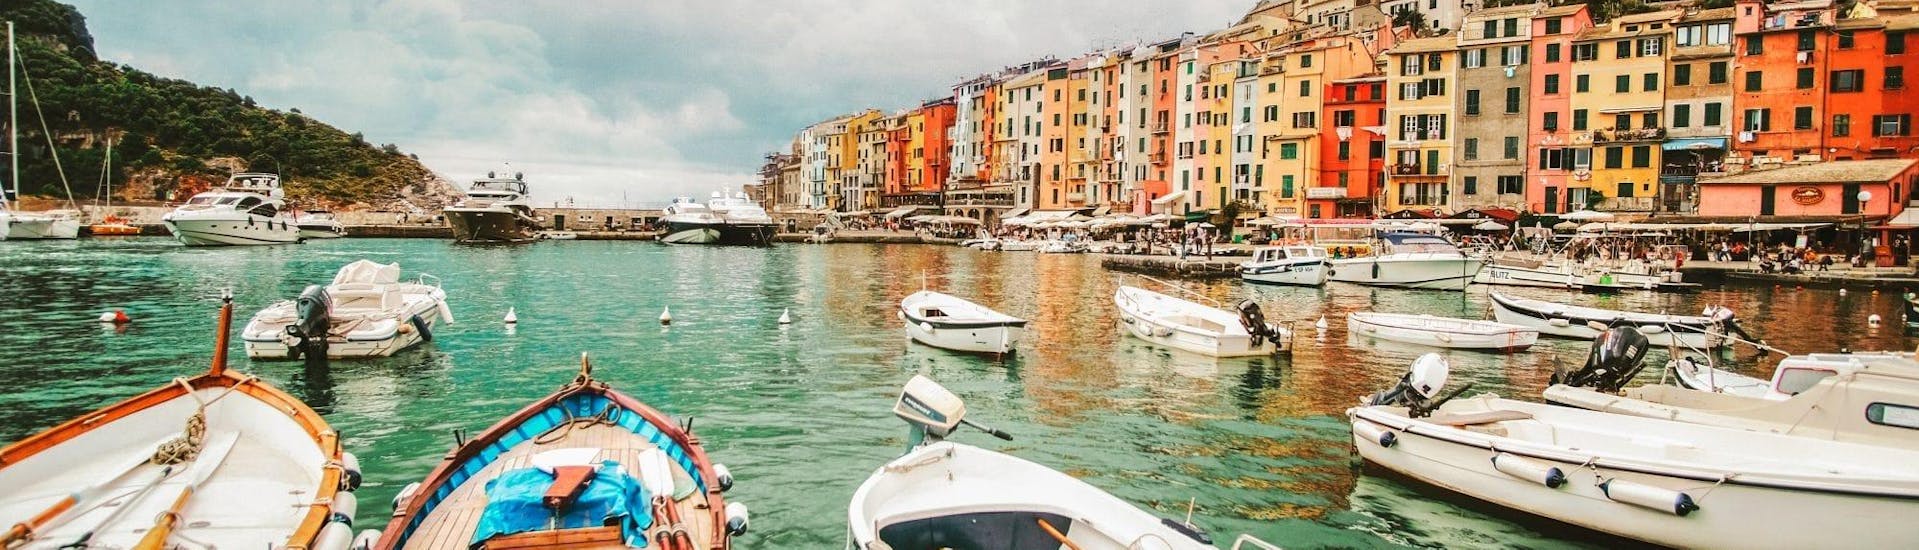 El hermoso paisaje de Porto Venere que puedes admirar durante el viaje en barco a Porto Venere y Vernazza con visitas guiadas, con Cinque Terre Ferries.